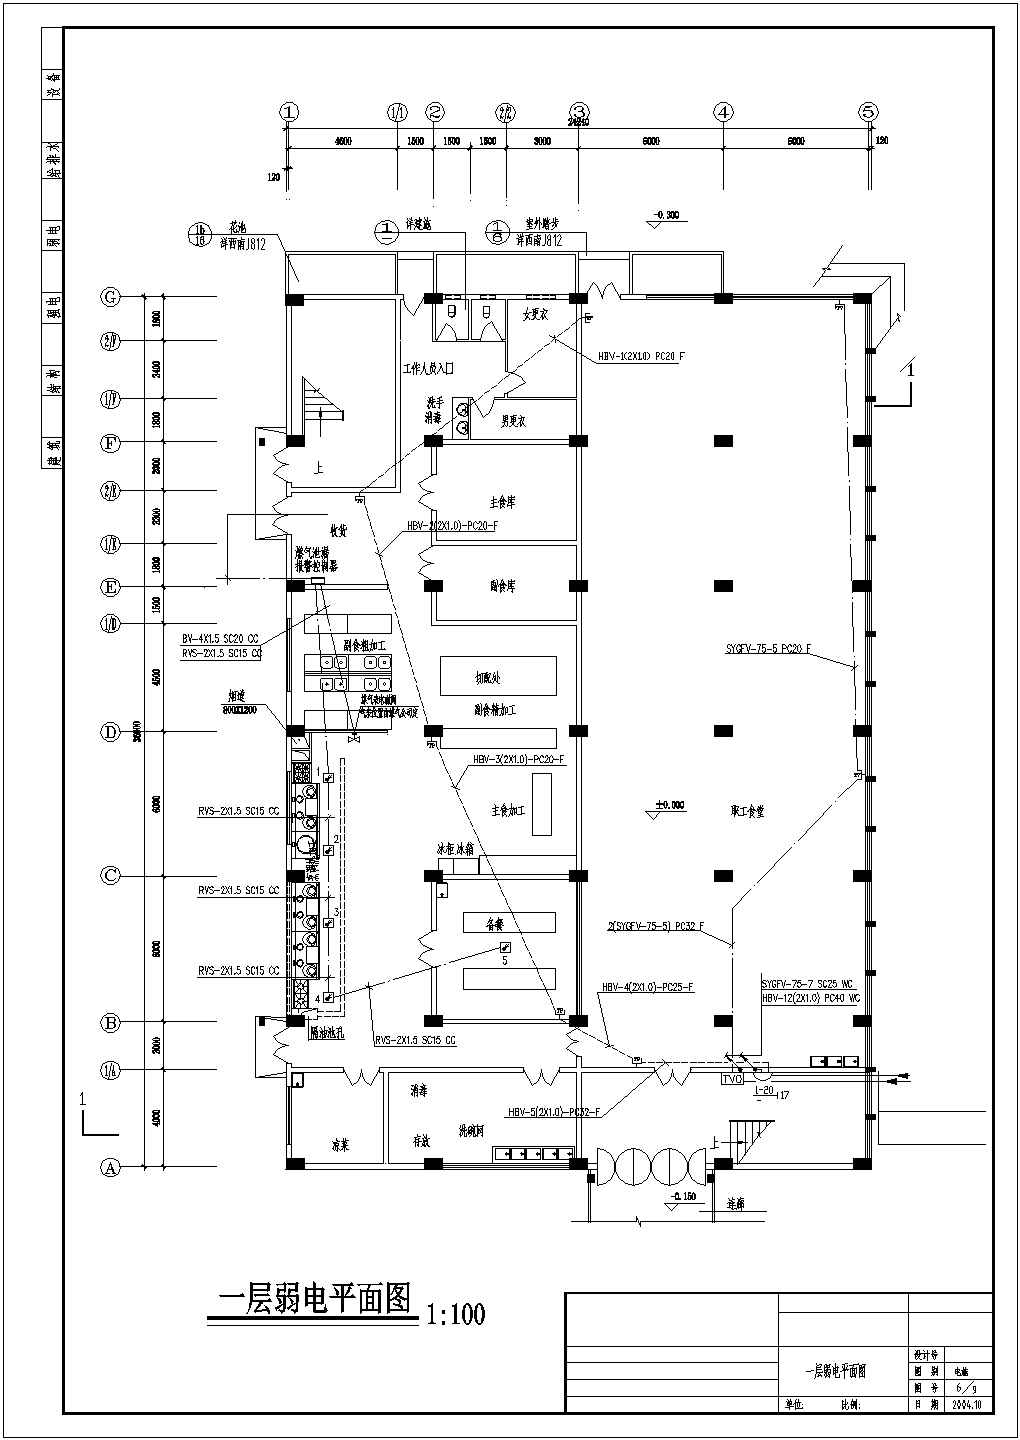 某电缆厂建筑食堂电气设计施工图纸